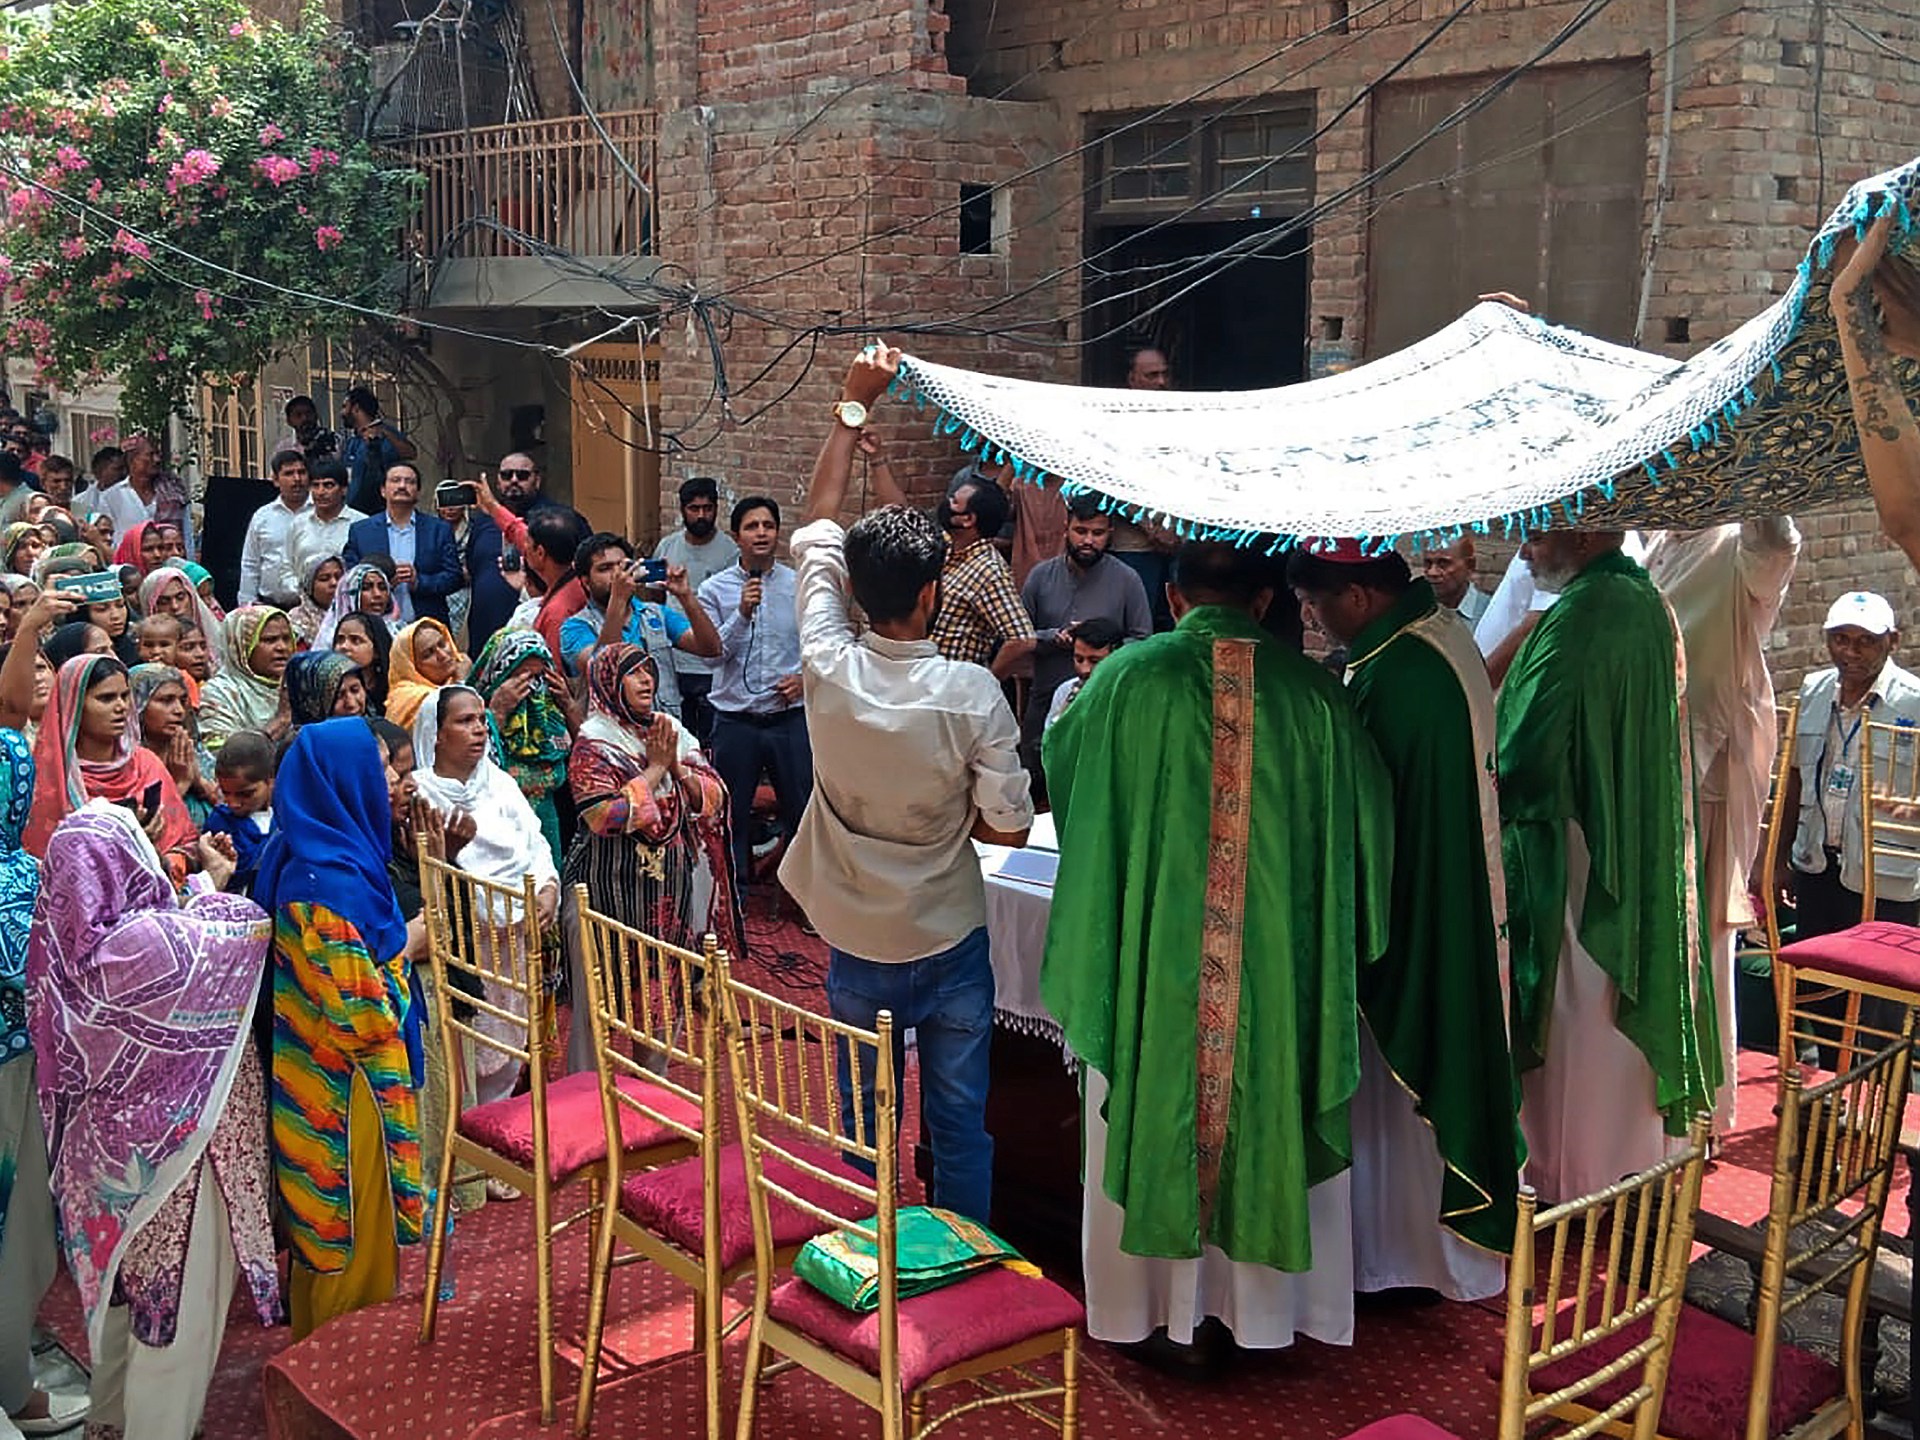 المسيحيون الباكستانيون يقيمون صلاة الأحد في الكنائس المسببة للانقسام |  اخبار دينية